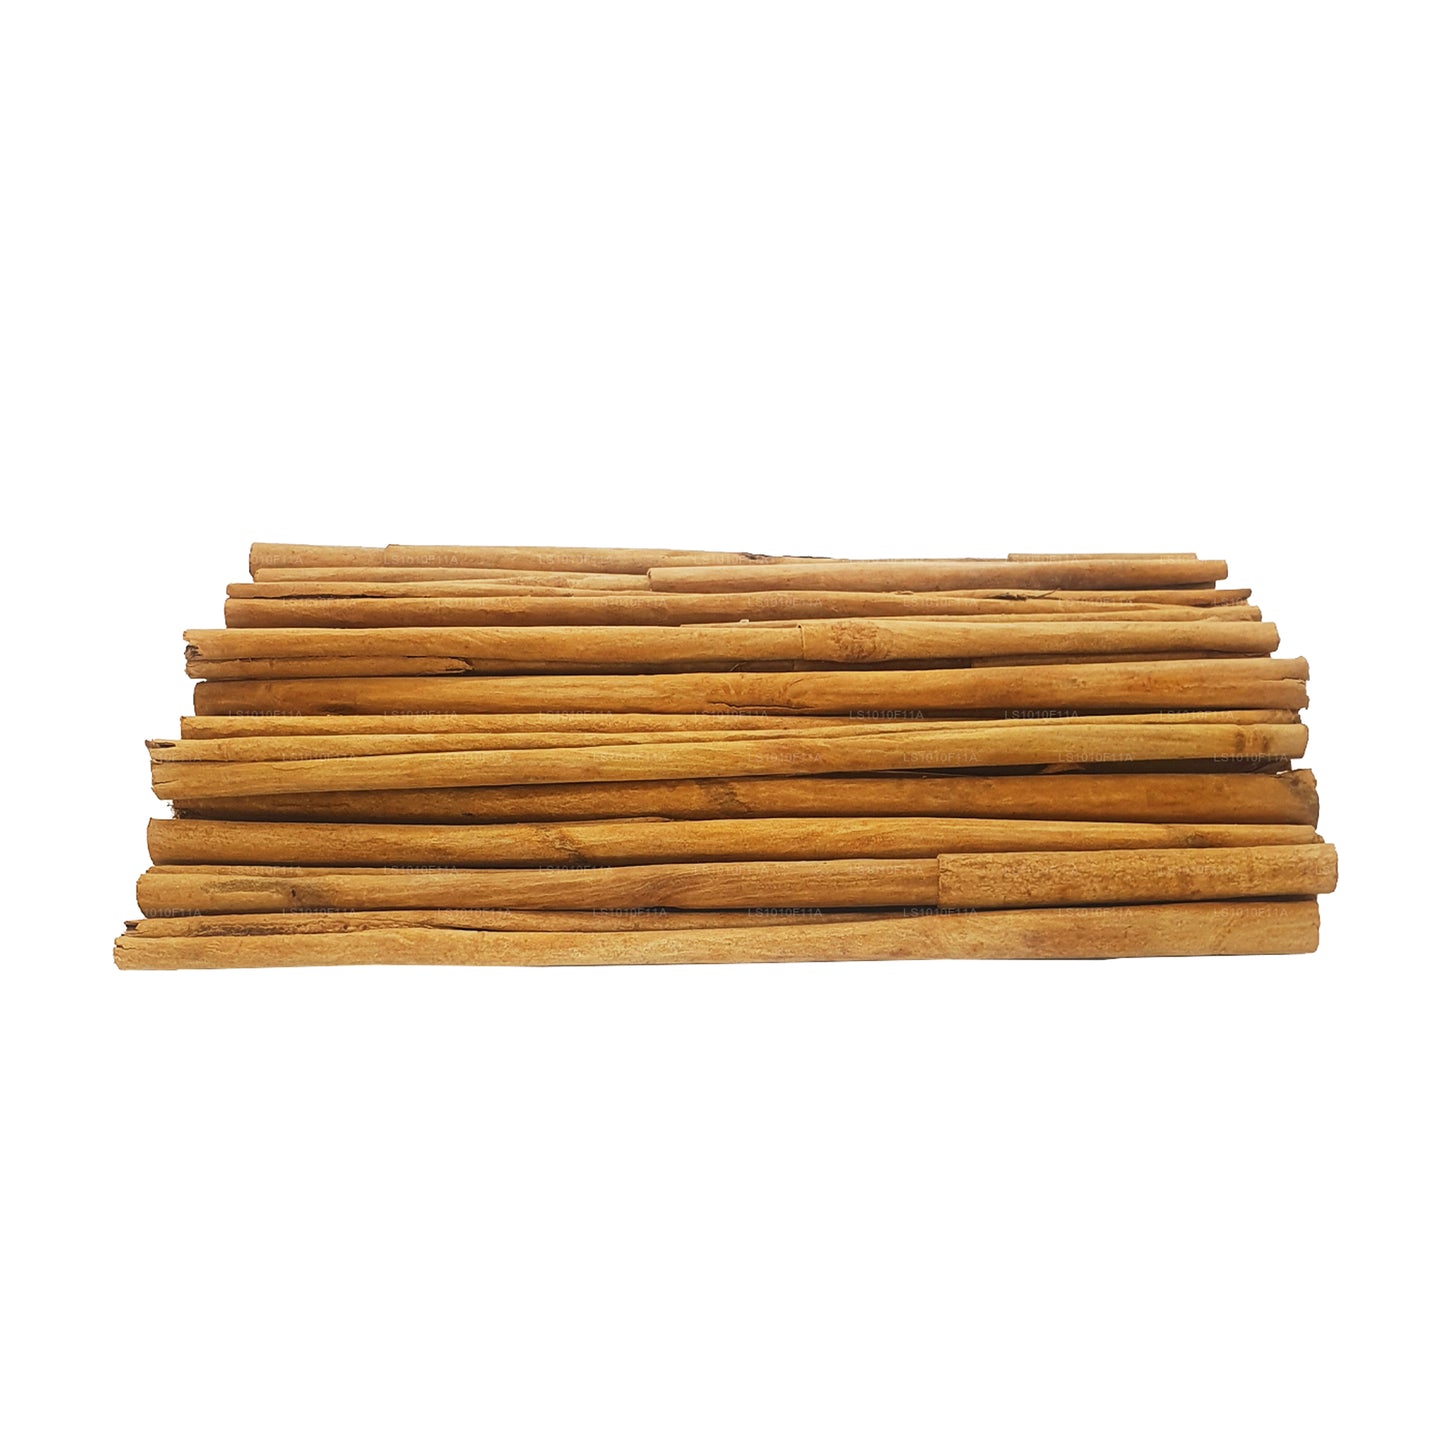 Lakpura "C5 Extra Special" Grade Ceylon True Cinnamon Barks Pack